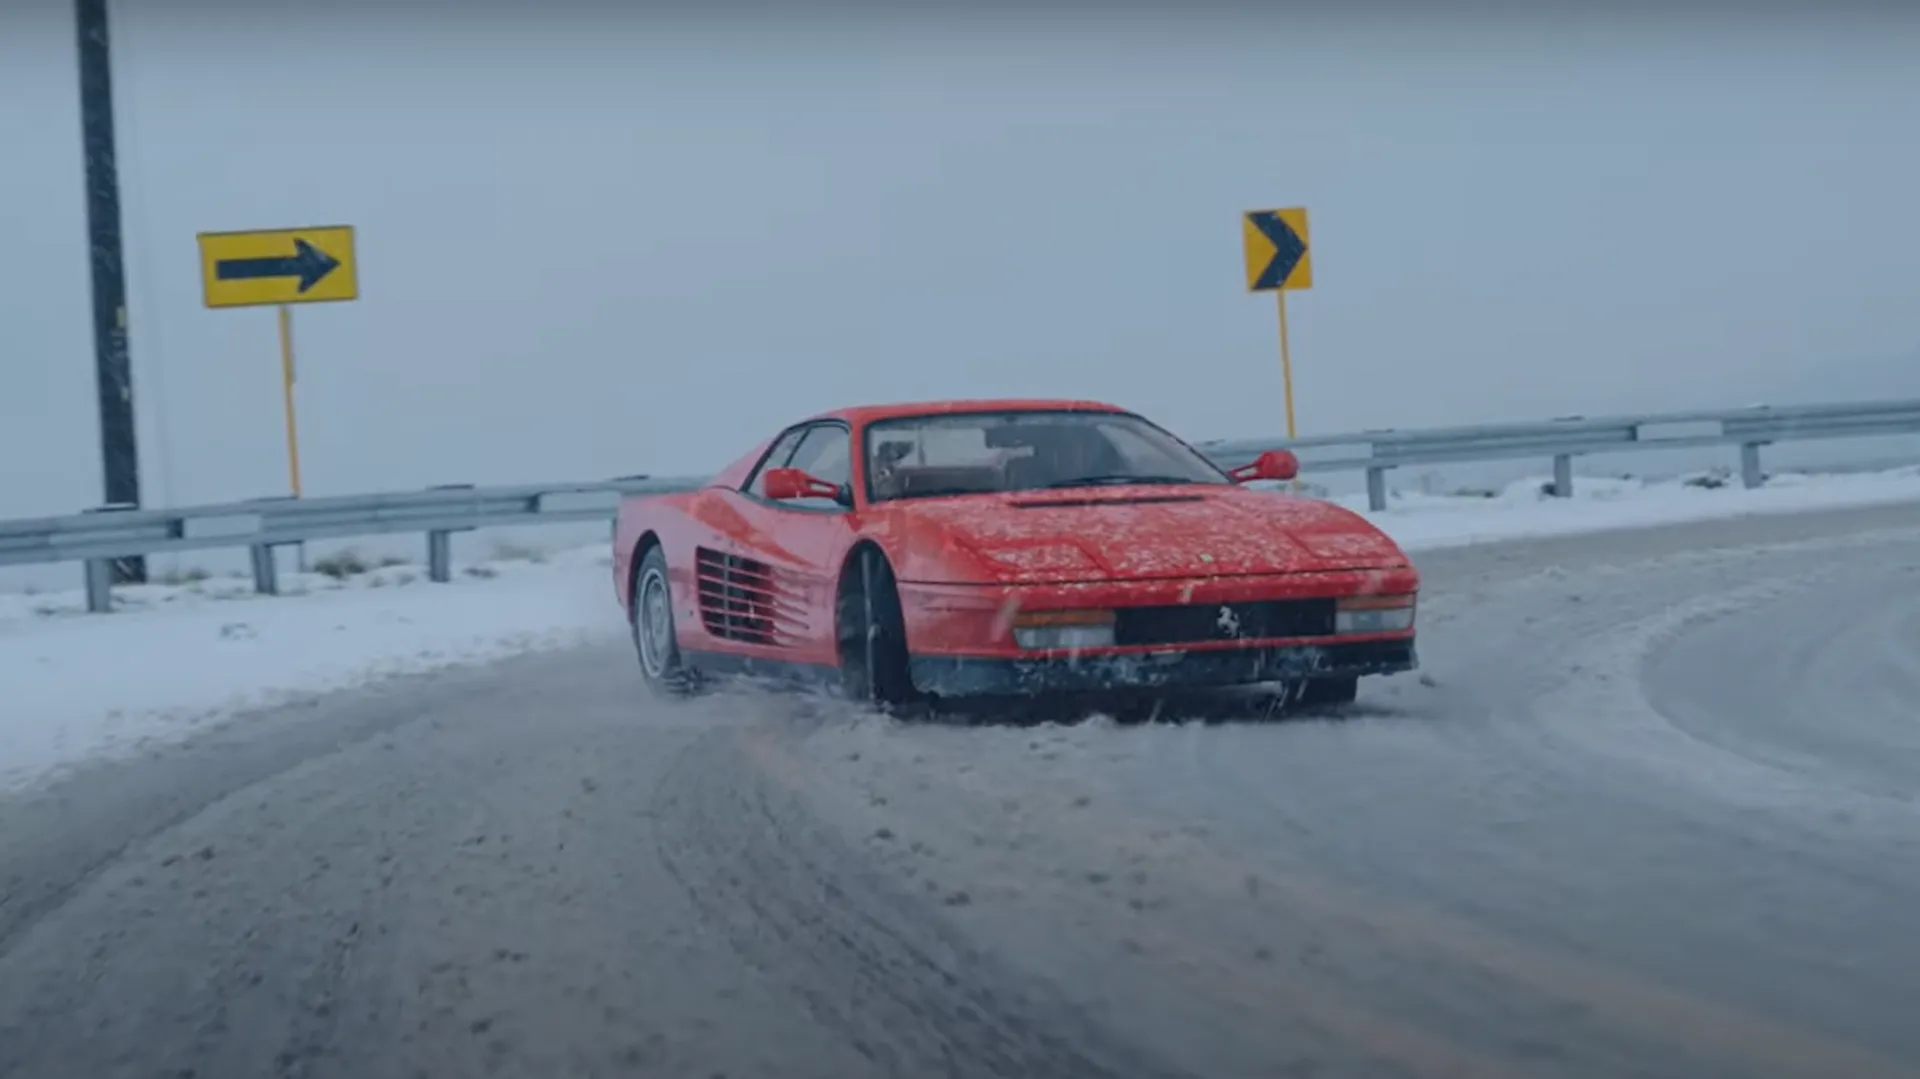 Un día de nieve, un Ferrari Testarossa en el garaje y algo de tiempo libre, ¿Qué podría pasar?